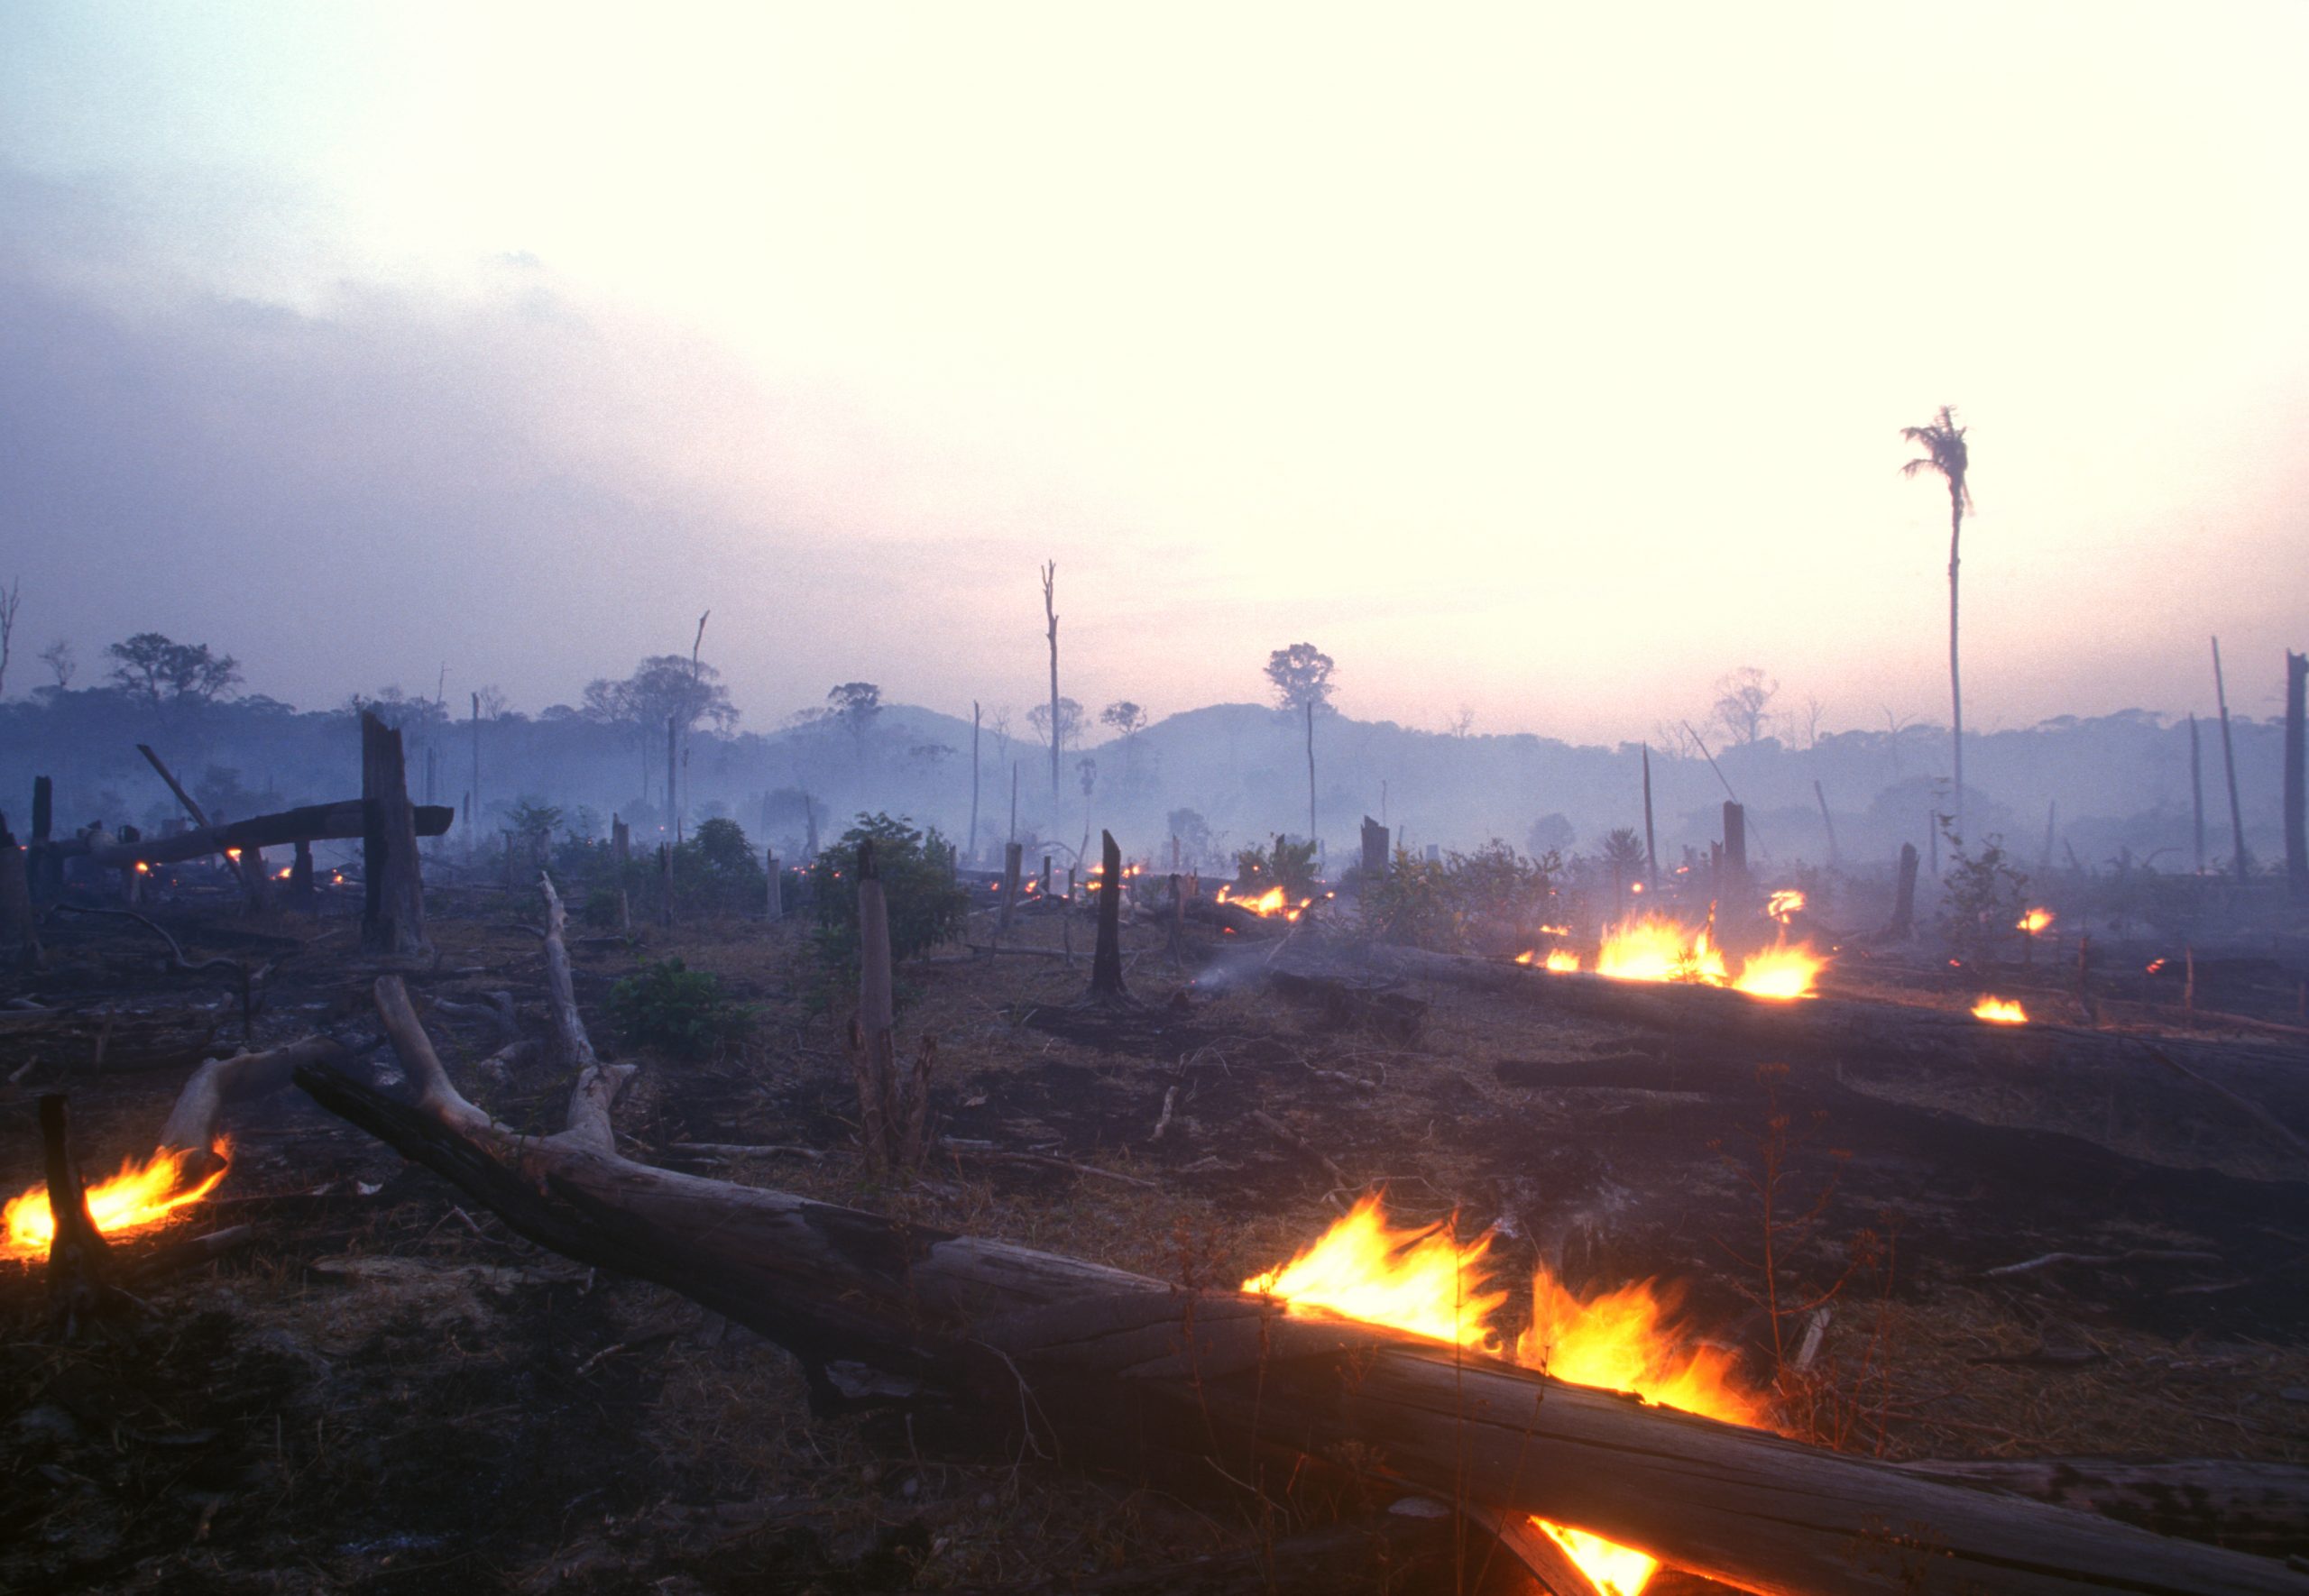 Landschaftsaufnahme von abgebranntem Regenwald einige Feuer lodern noch im Vordergrund